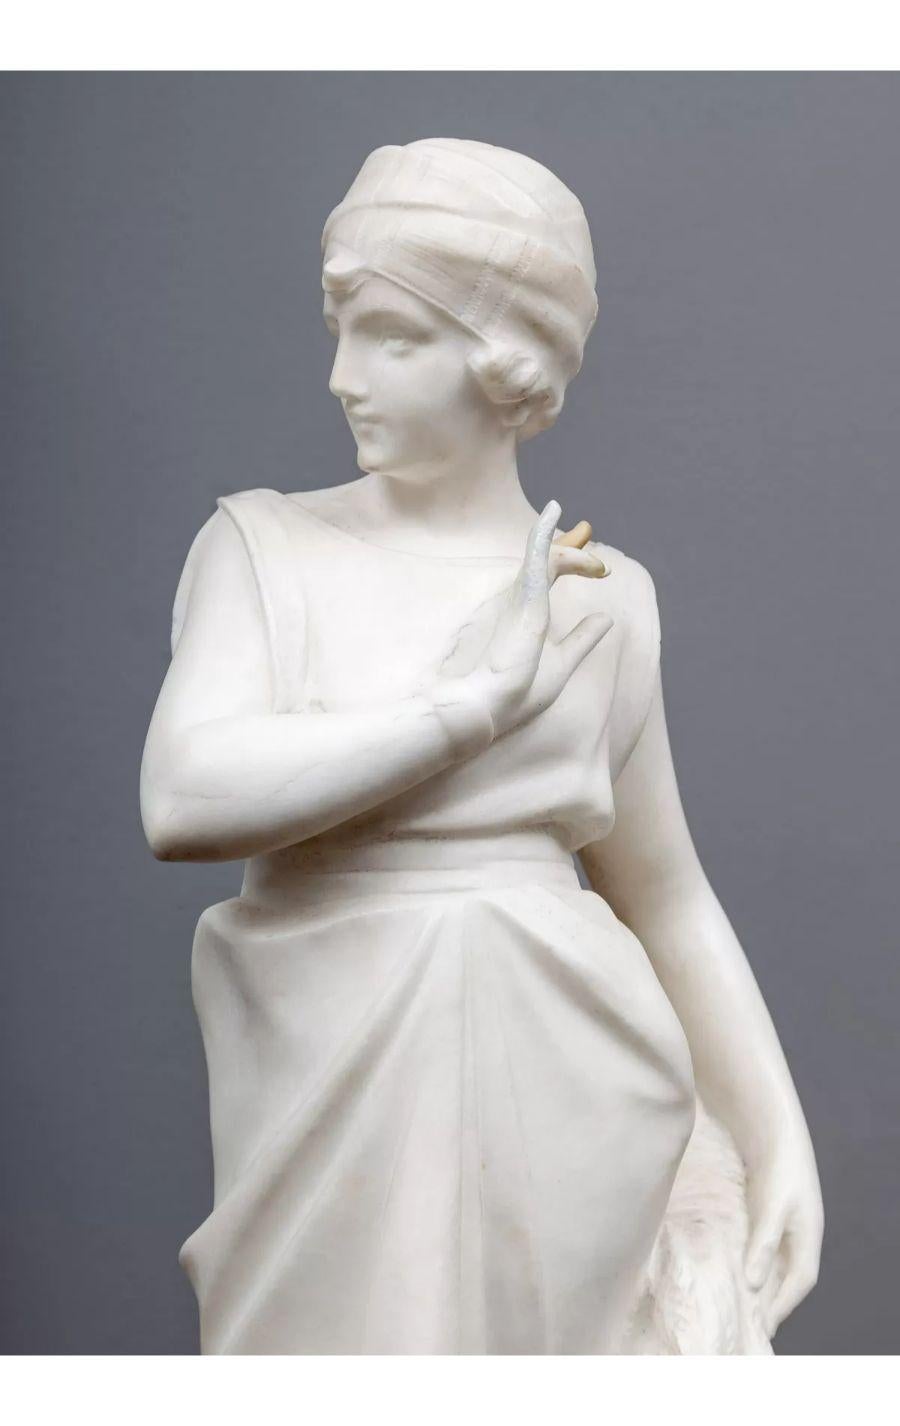 Eine französische Art Deco Figur aus weißem Marmor, die ein Flapper Girl darstellt.

Wunderschön geschnitzte und sehr detaillierte Statue auf einem Sockel aus Panozza-Marmor.

Zusätzliche Informationen:
Abmessungen:
Breite: 7